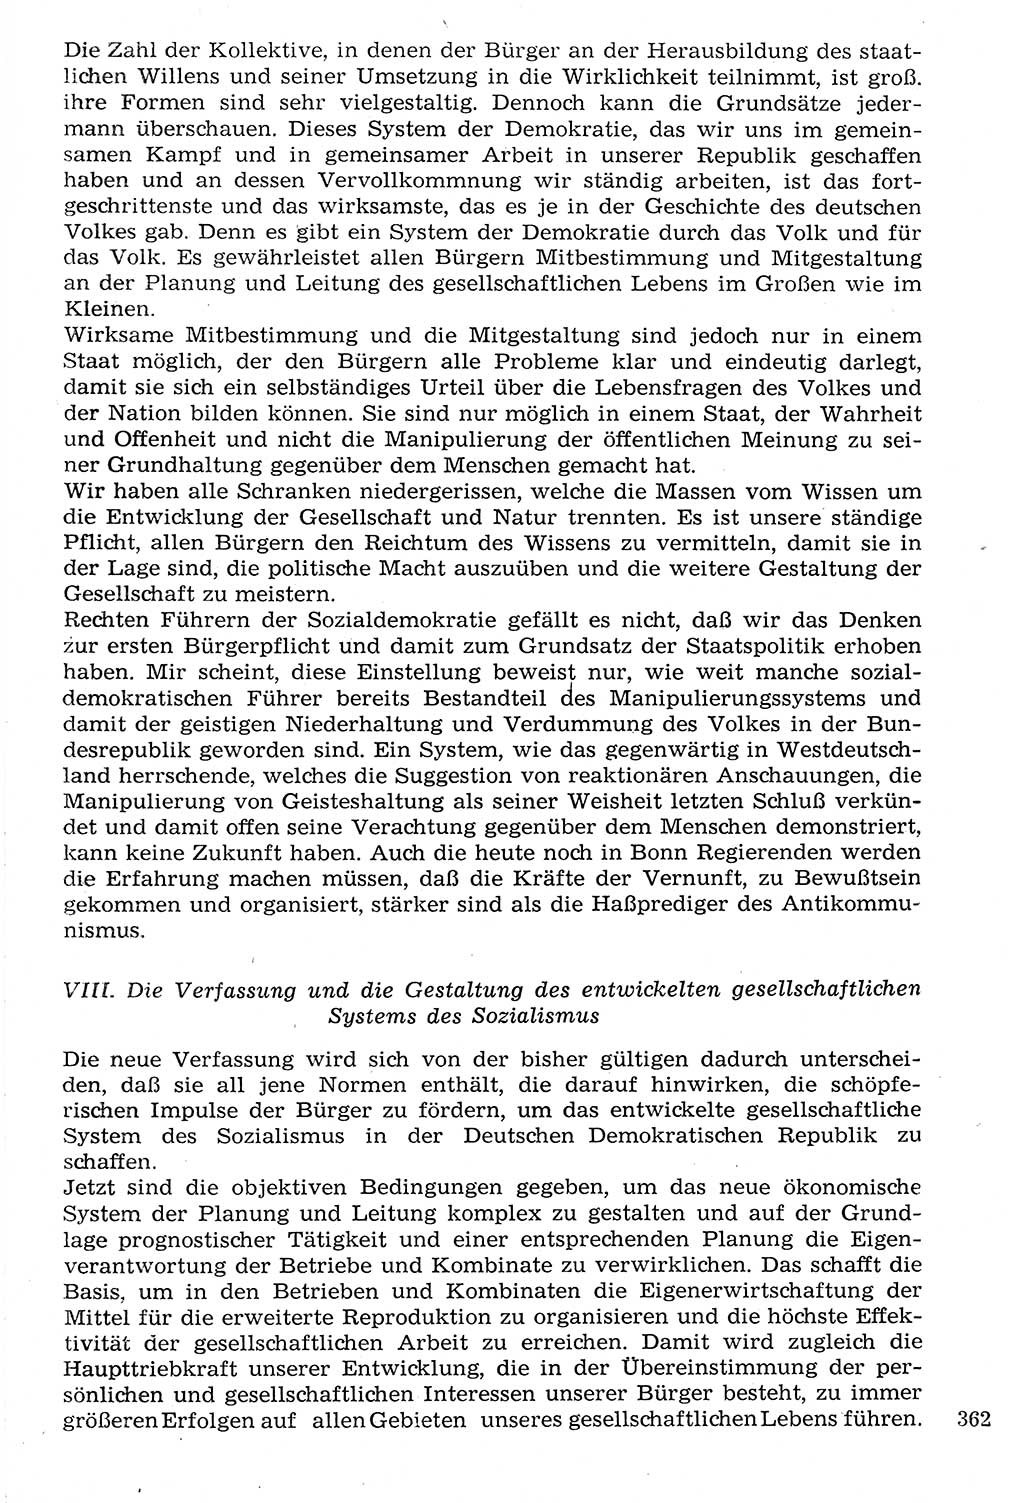 Staat und Recht (StuR), 17. Jahrgang [Deutsche Demokratische Republik (DDR)] 1968, Seite 362 (StuR DDR 1968, S. 362)